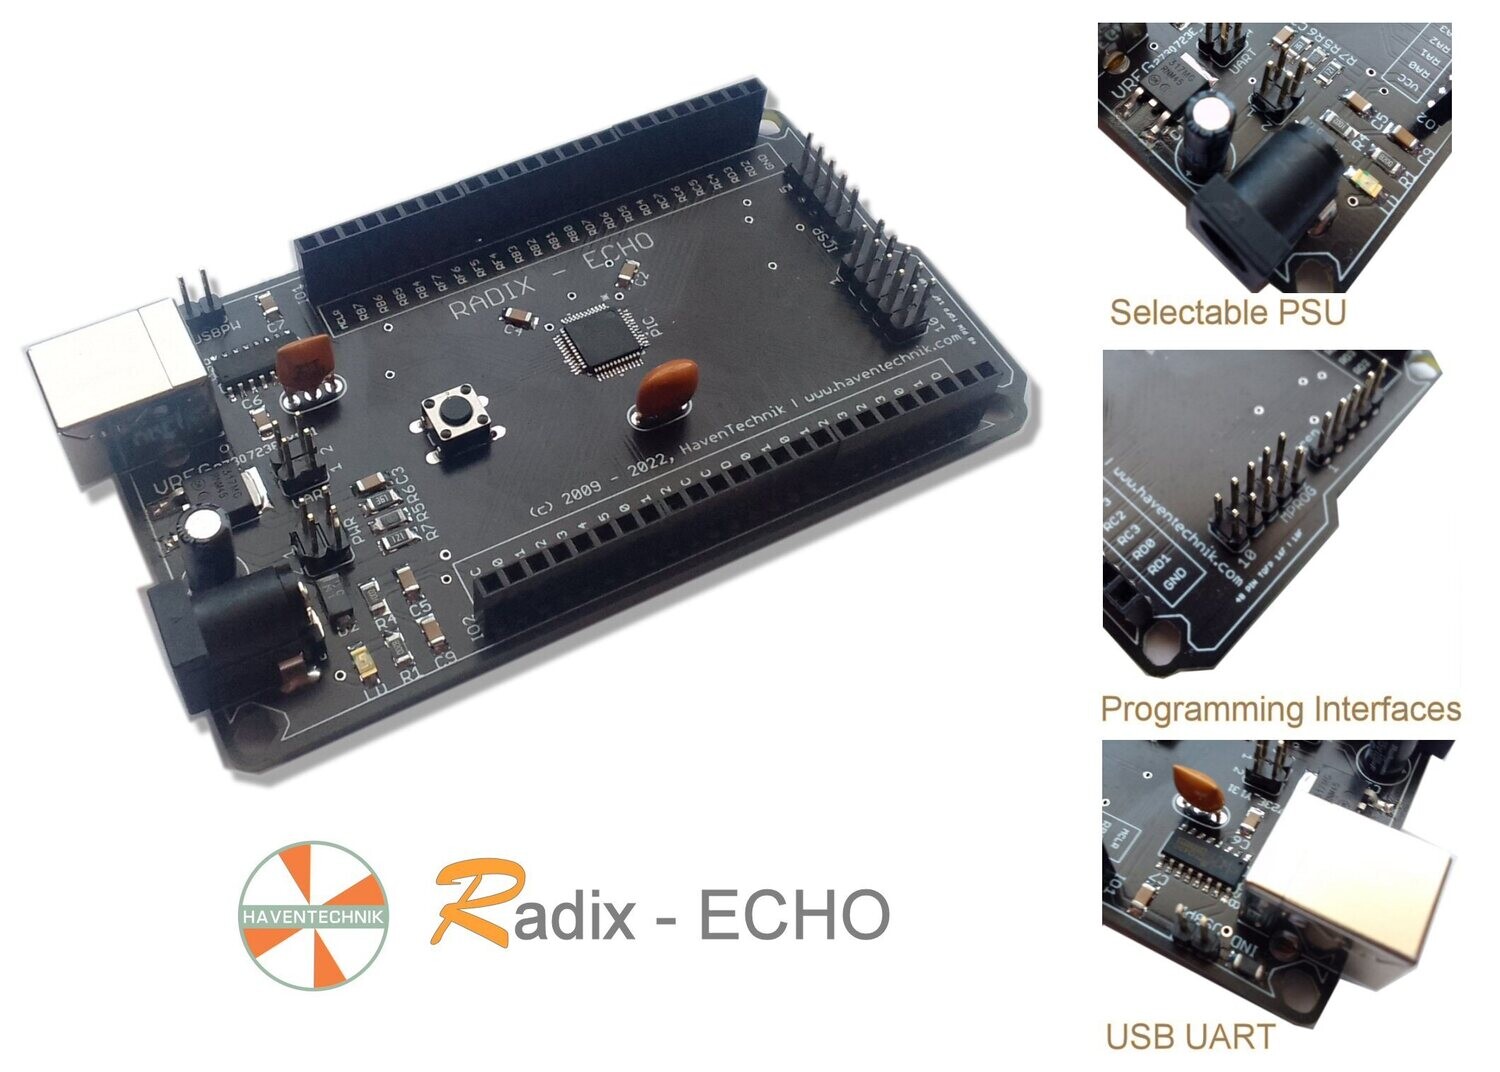 Radix - ECHO